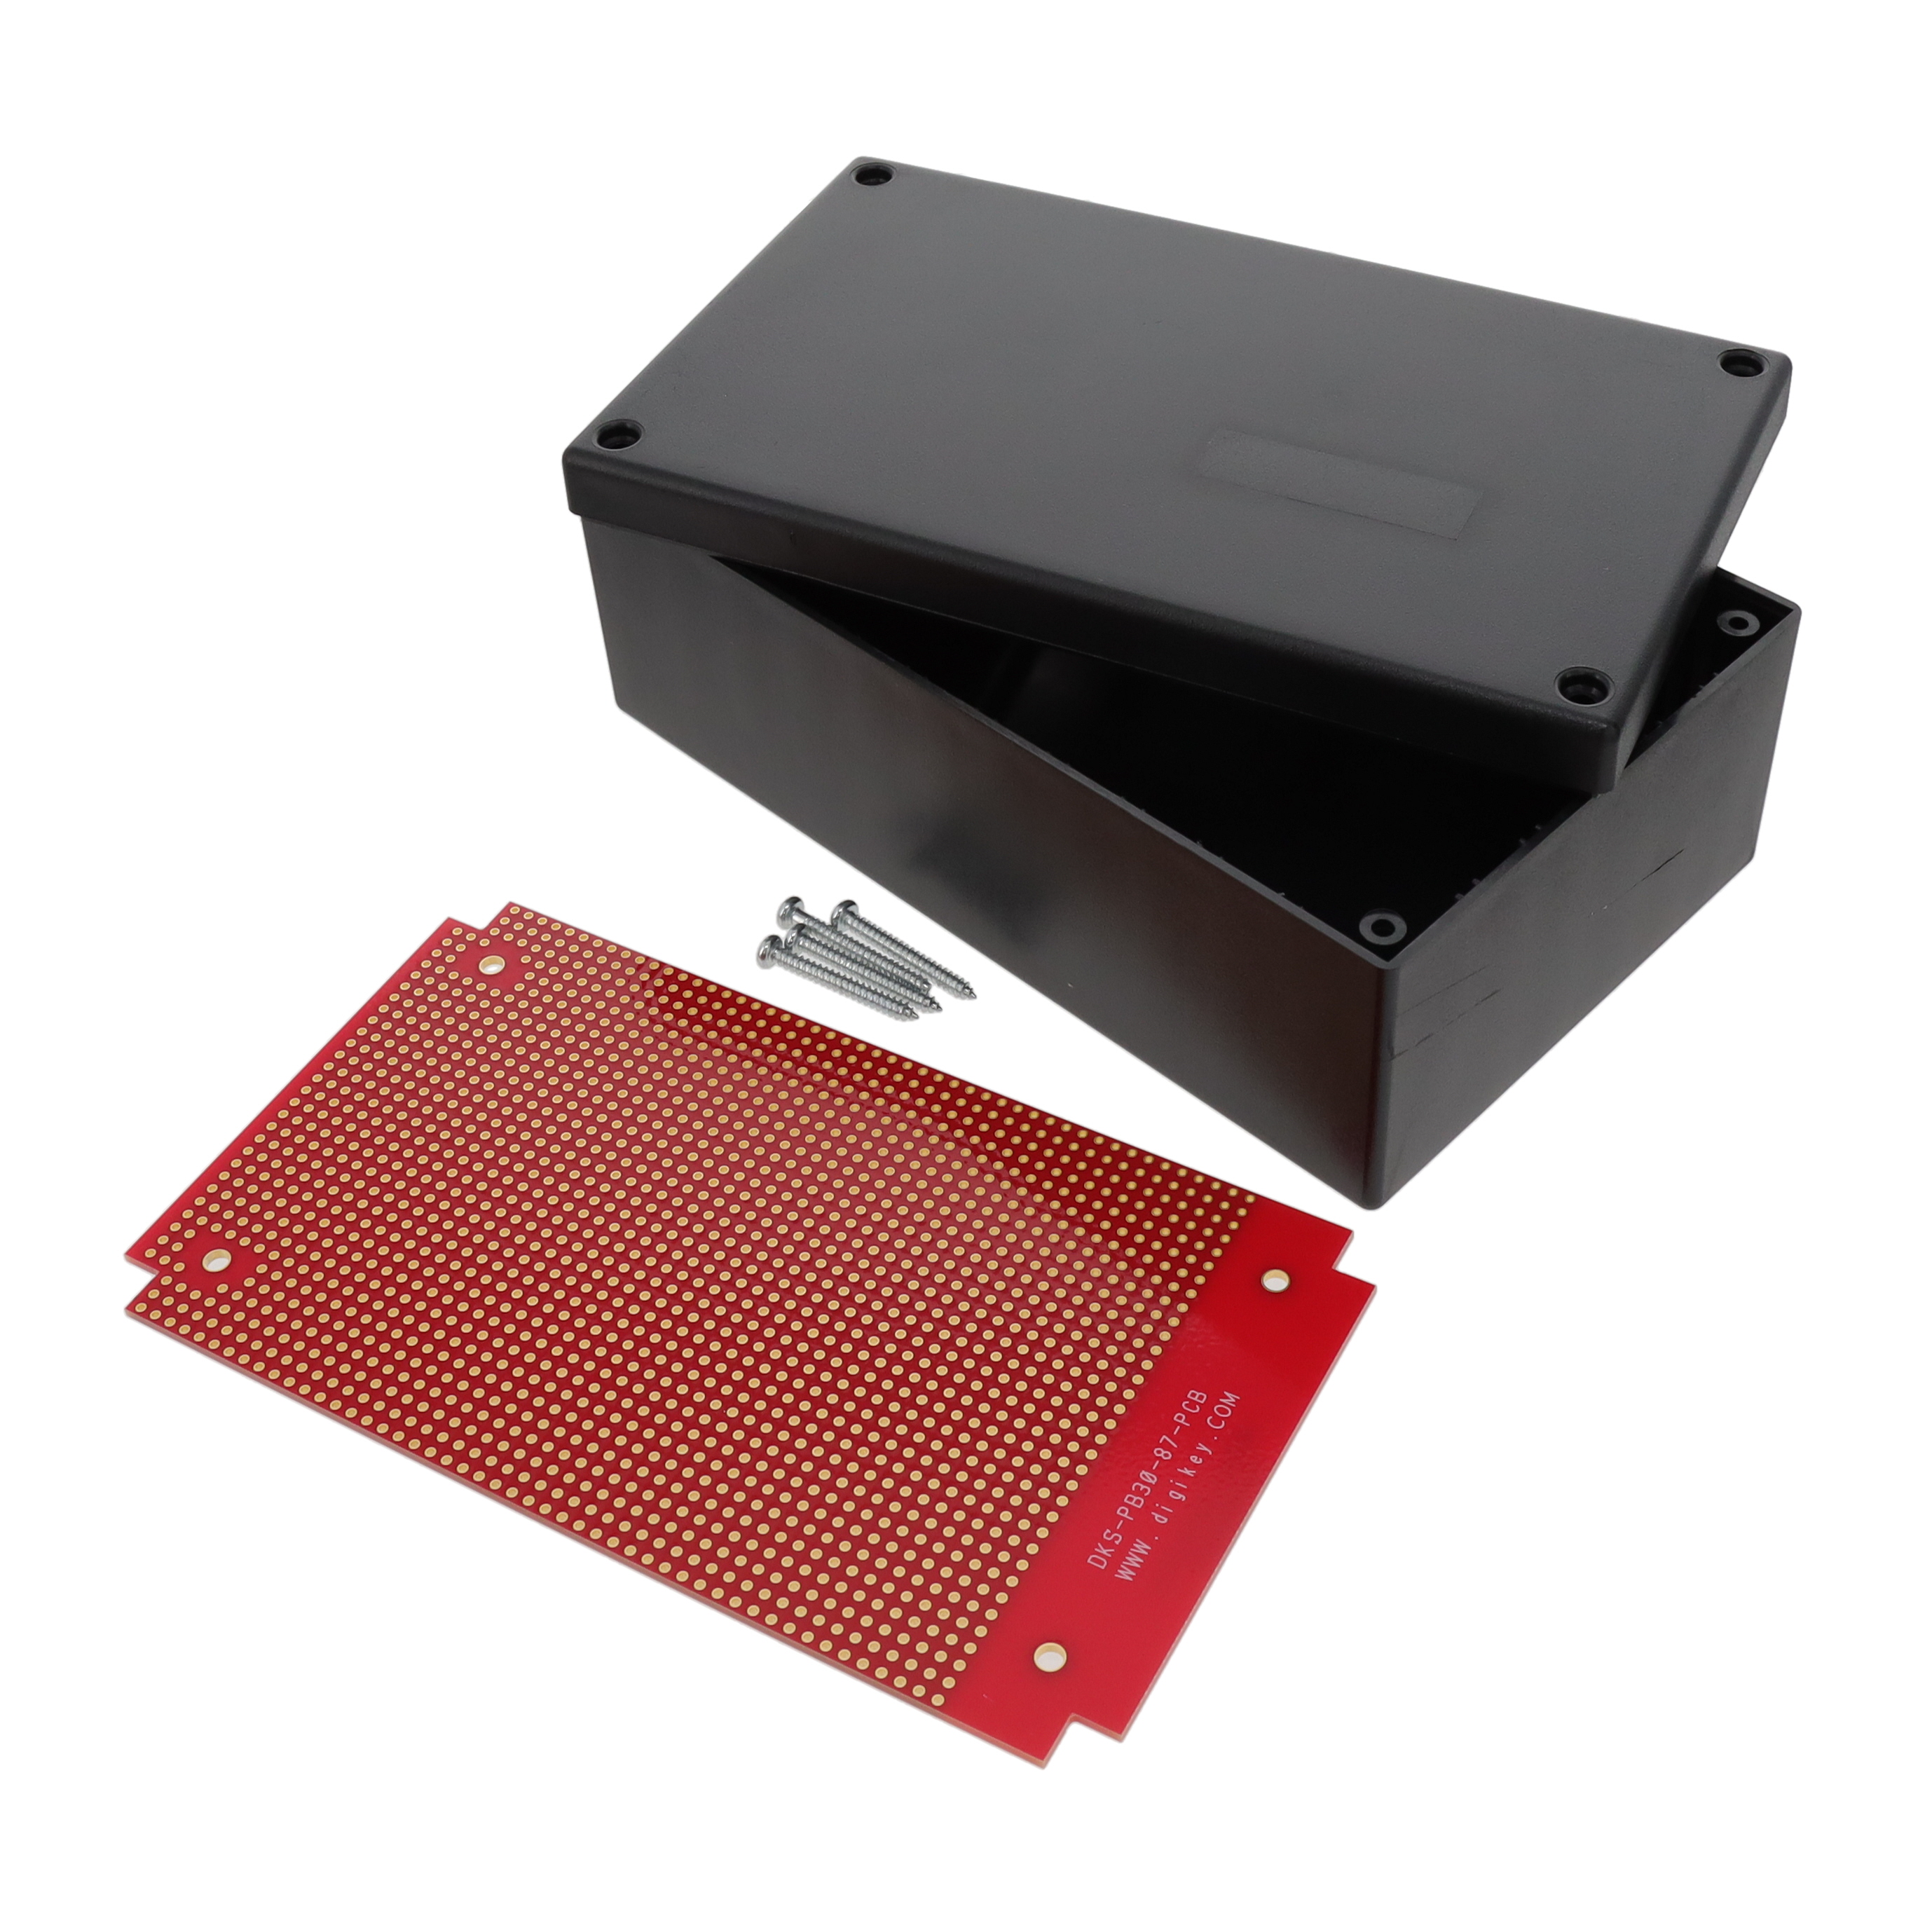 【DKS-PB30-87】BOX ABS BLACK 6.3"L X 3.7"W